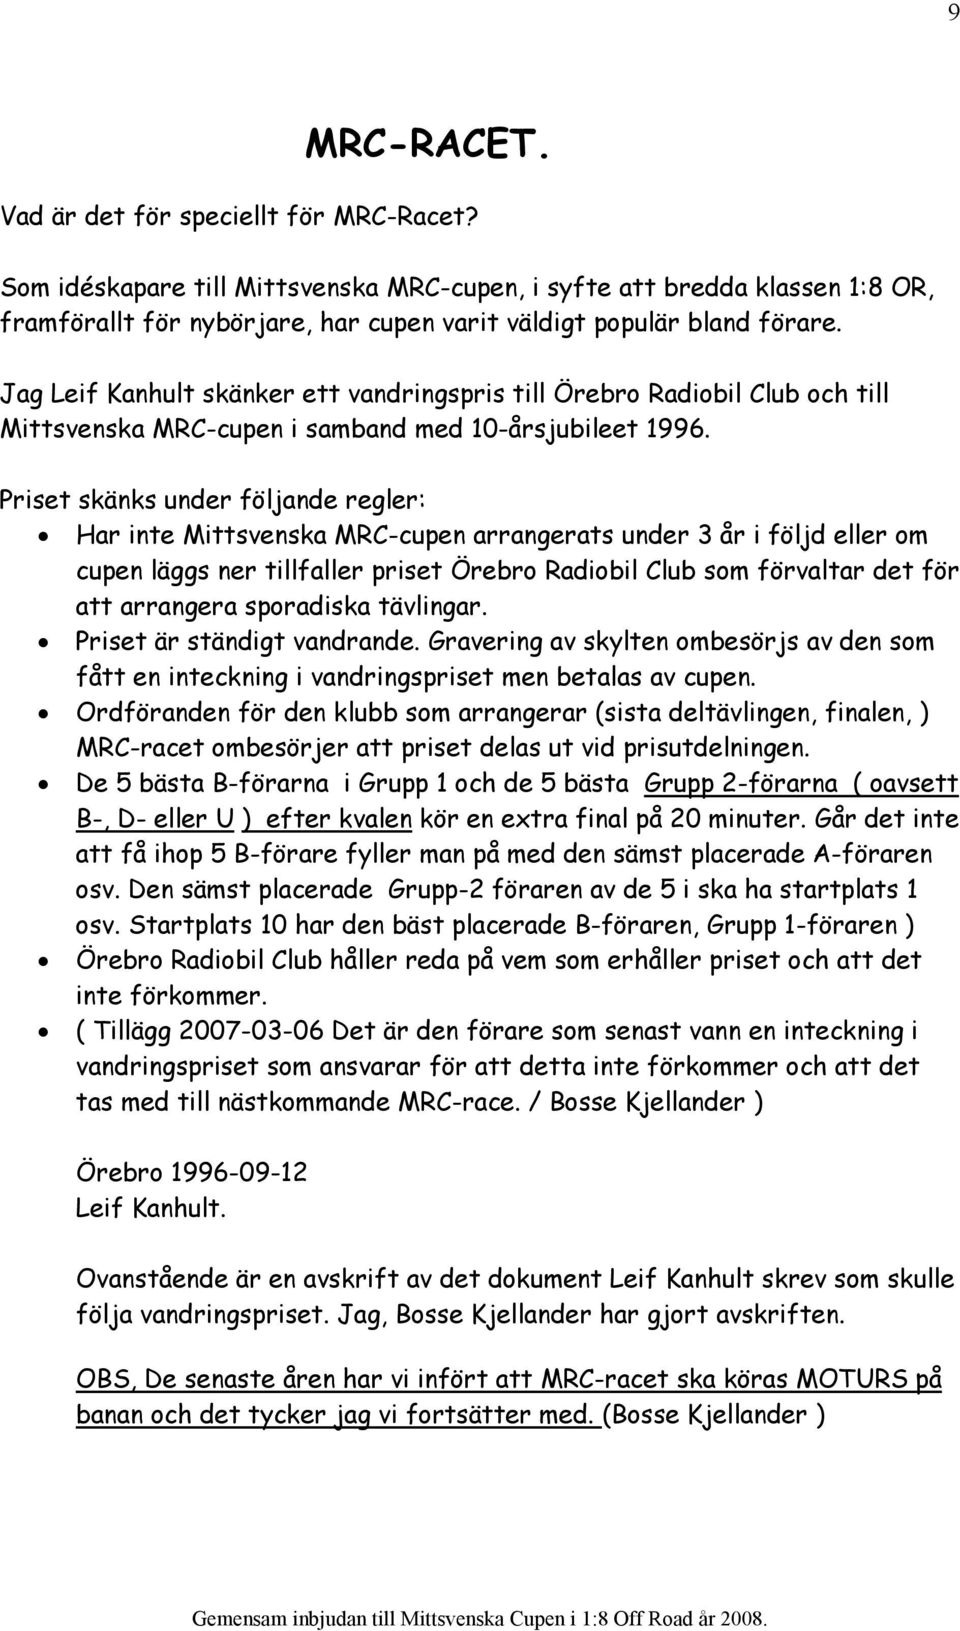 Jag Leif Kanhult skänker ett vandringspris till Örebro Radiobil Club och till Mittsvenska MRC-cupen i samband med 10-årsjubileet 1996.